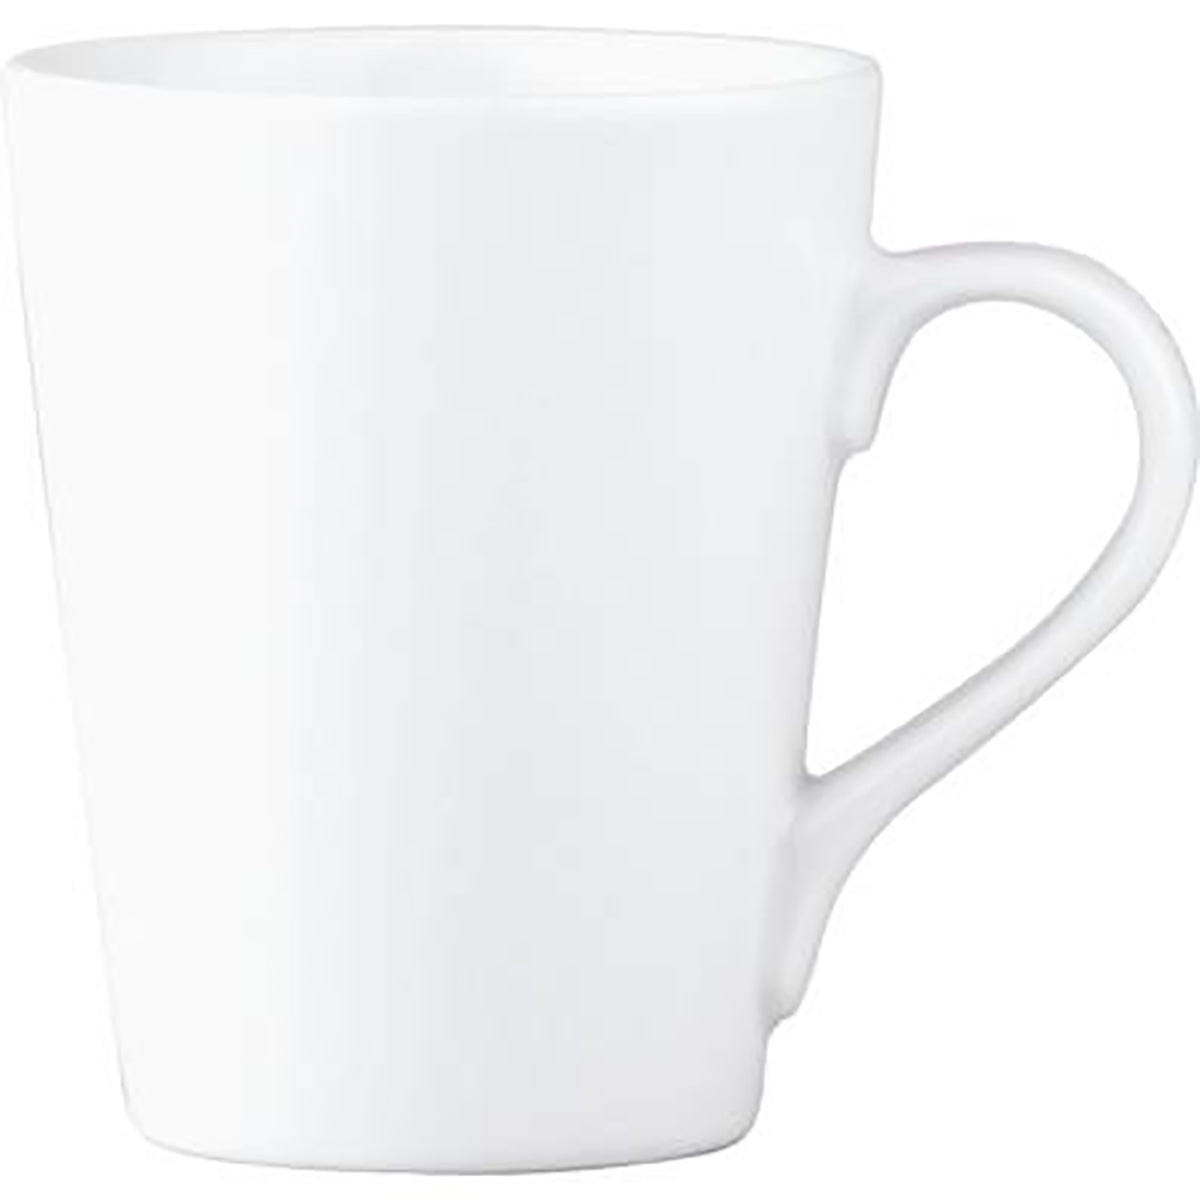 94166 Royal Porcelain Chelsea Coffee Mug 0.37Lt (4308) Tomkin Australia Hospitality Supplies